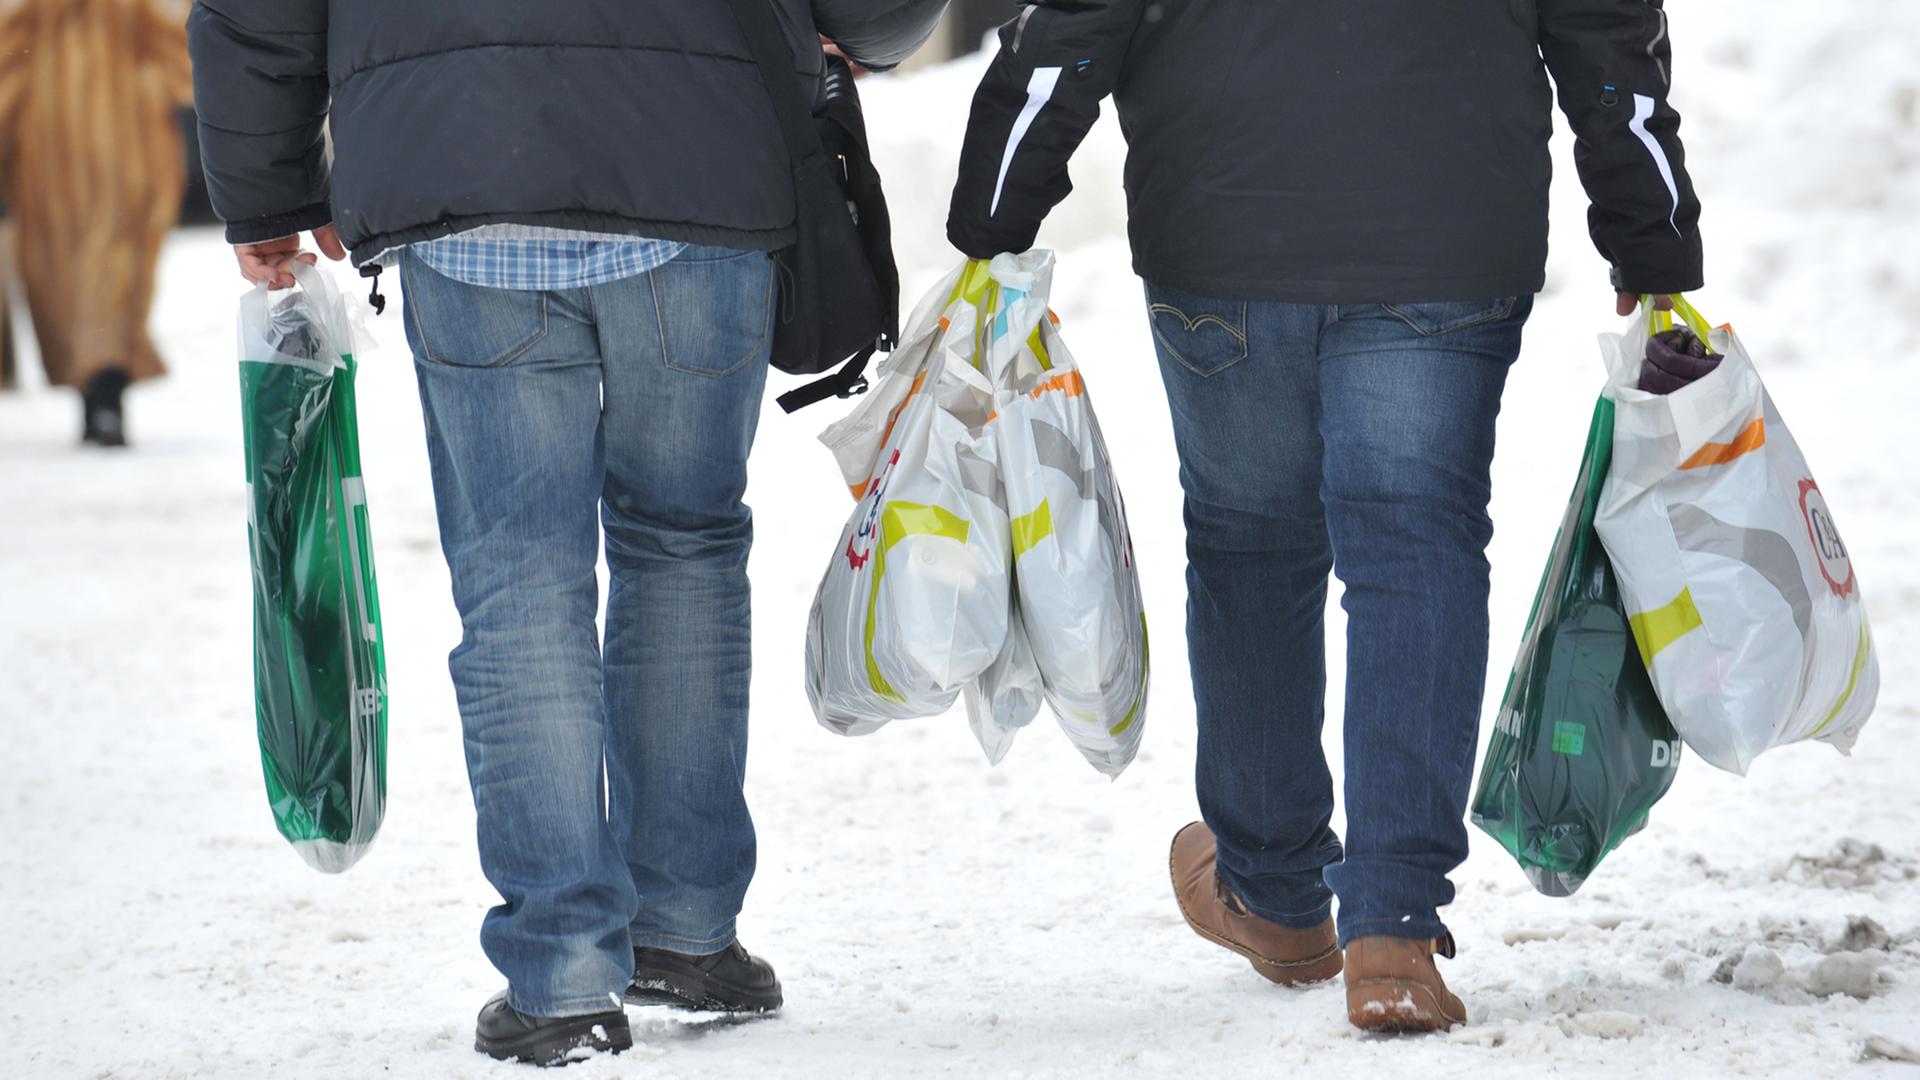 Zwei Männer tragen am 21.01.2013 in der Innenstadt von München (Bayern) mehrere Einkaufstüten.